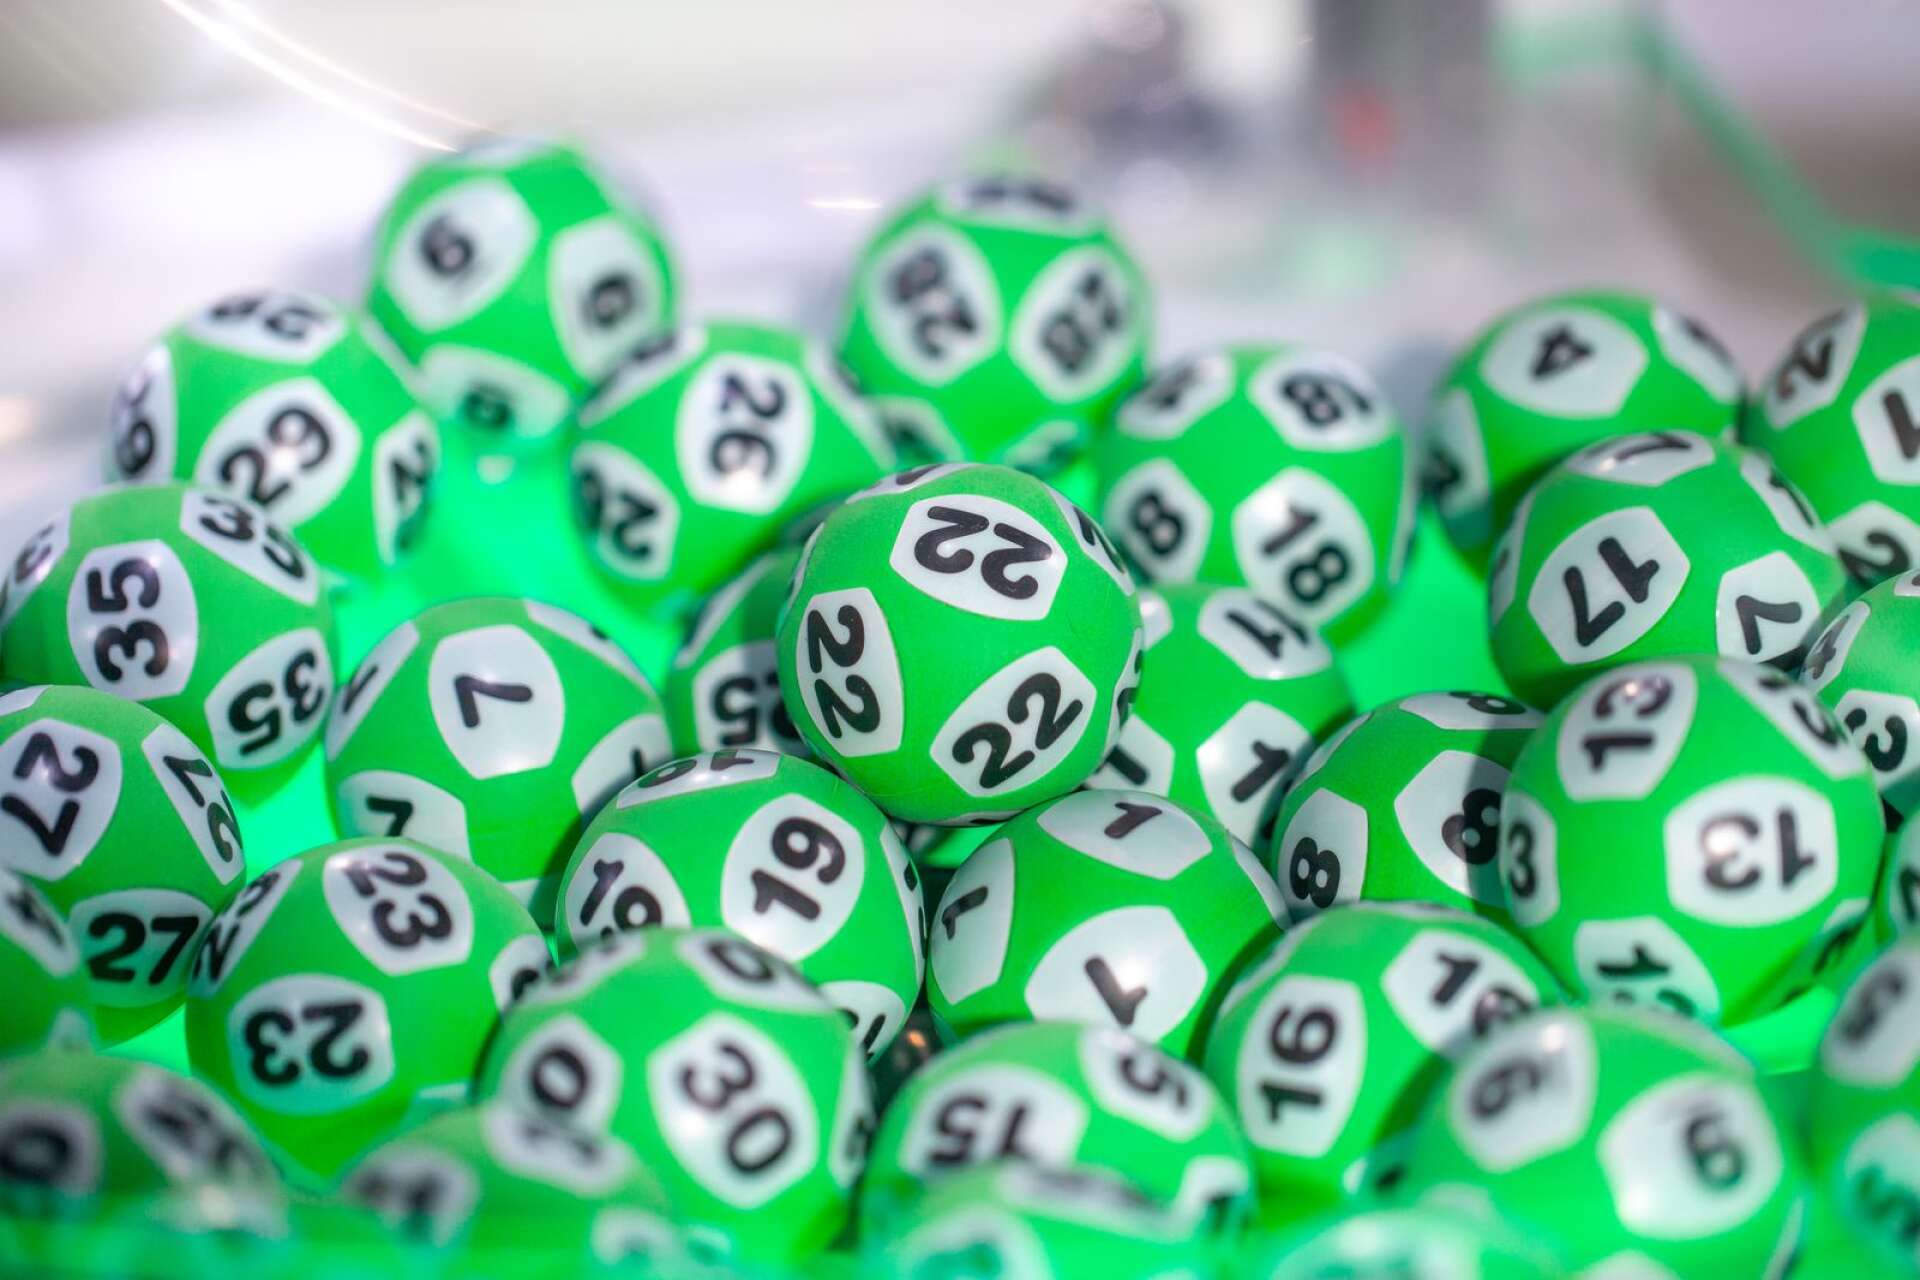 En kvinna i 50-årsåldern i Sunne tog hem en miljon på Lotto under onsdagen.